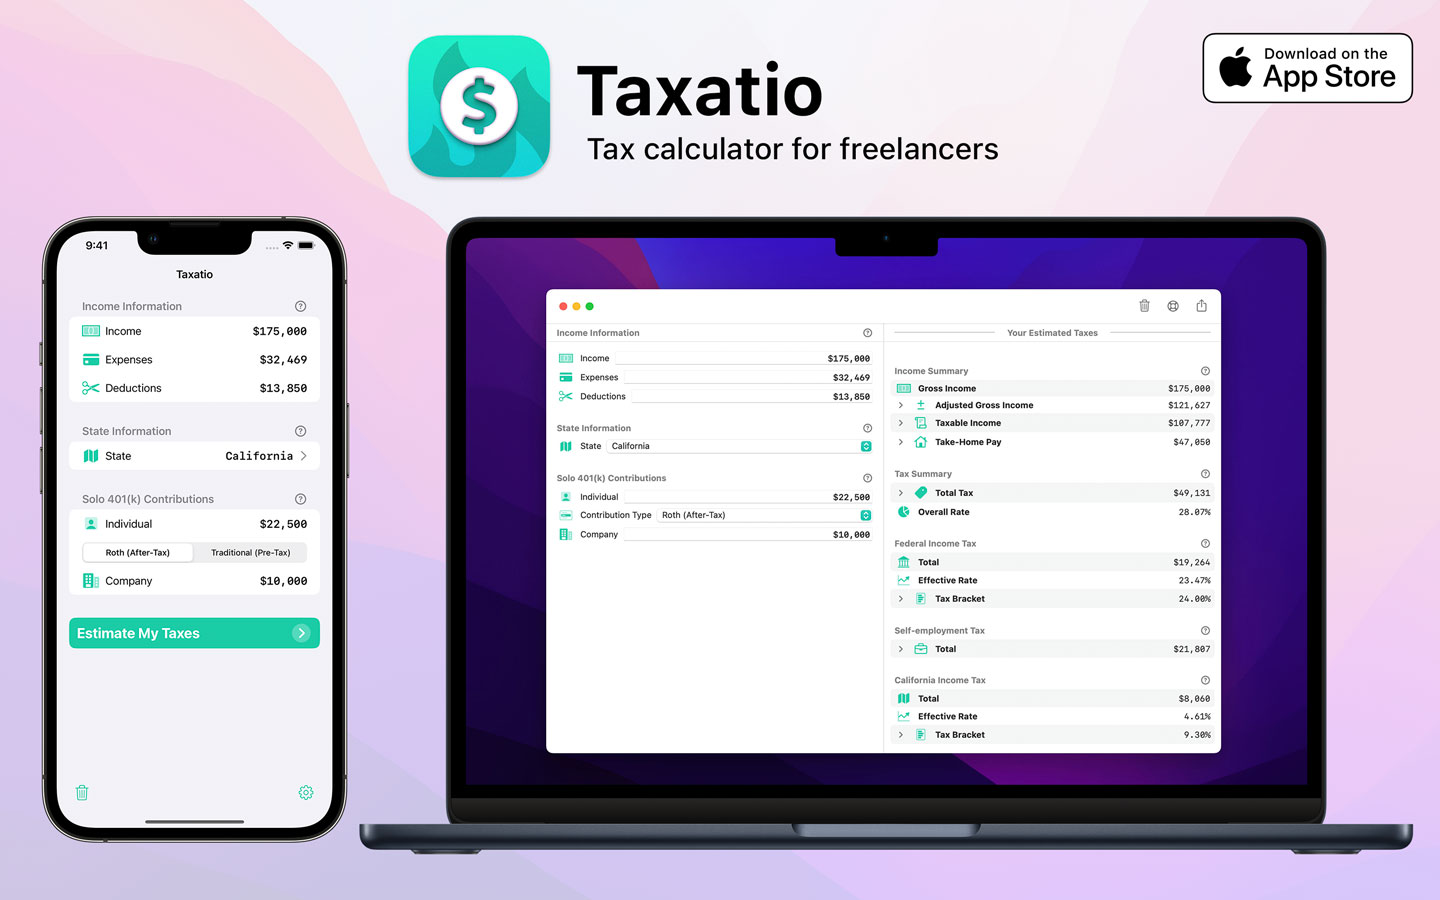 Taxatio for iOS and macOS